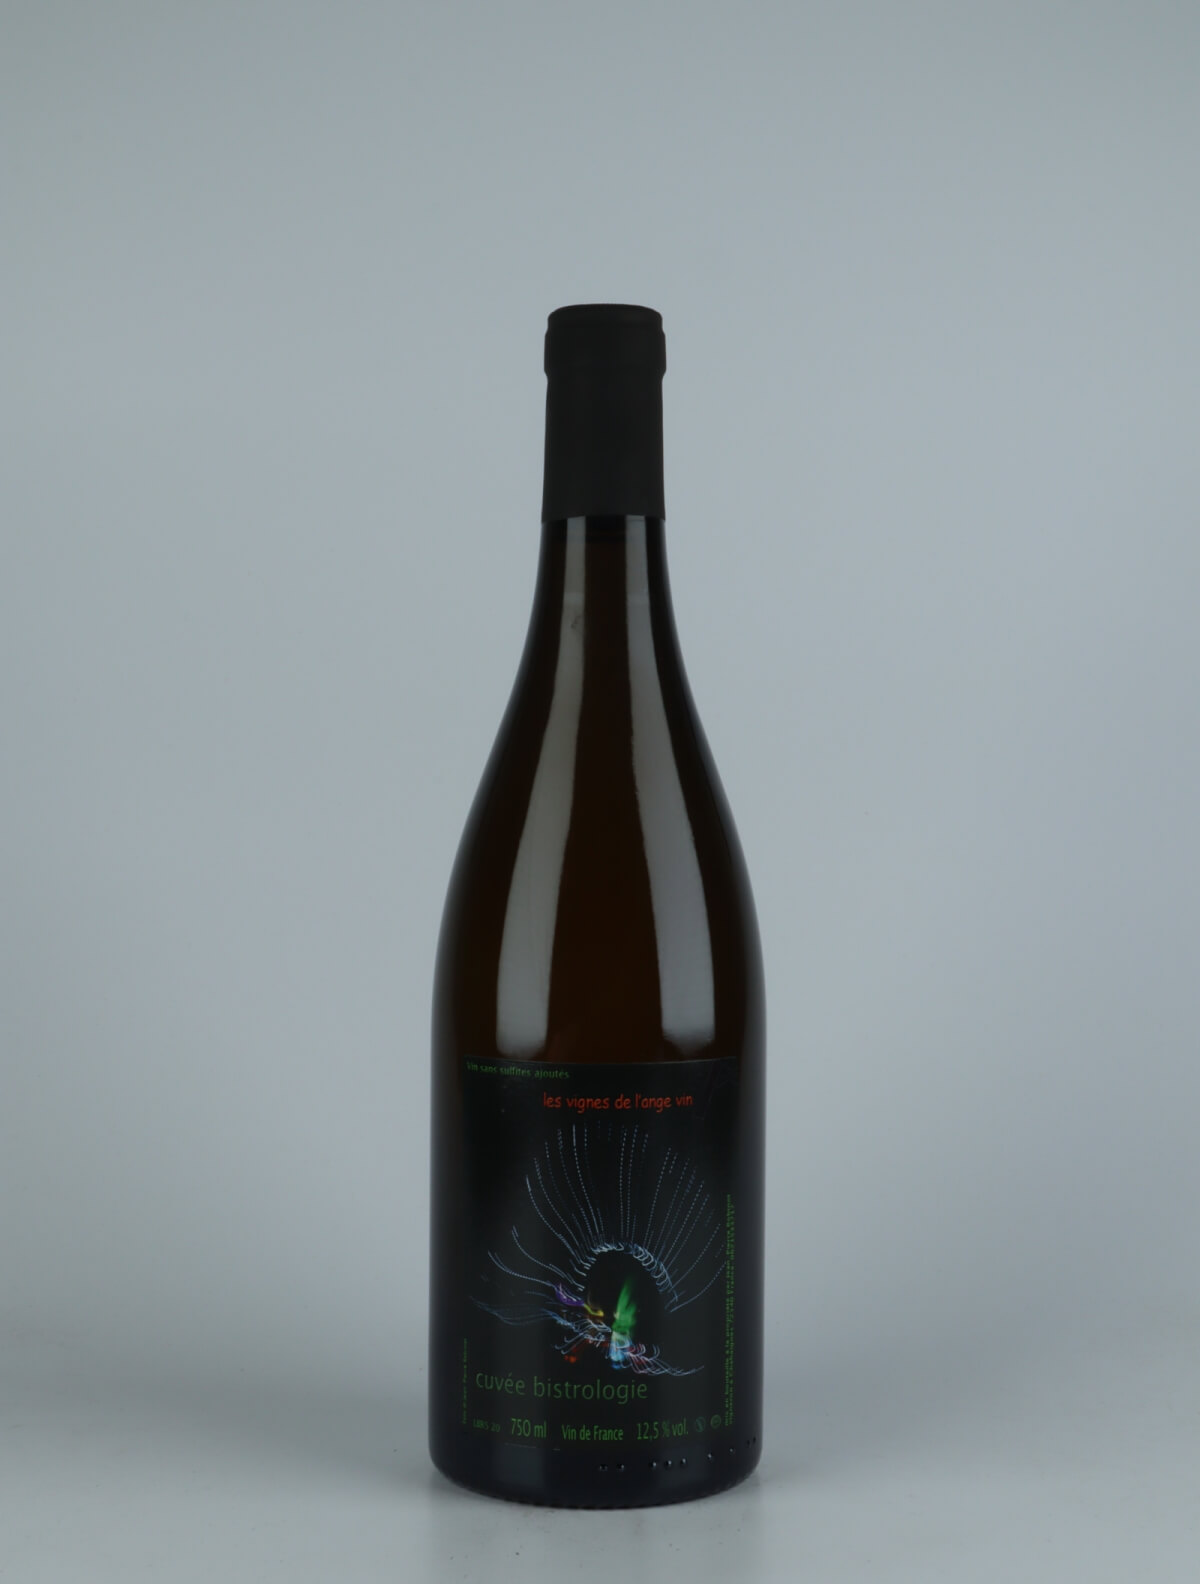 A bottle 2020 Bistrologie White wine from , Loire in France